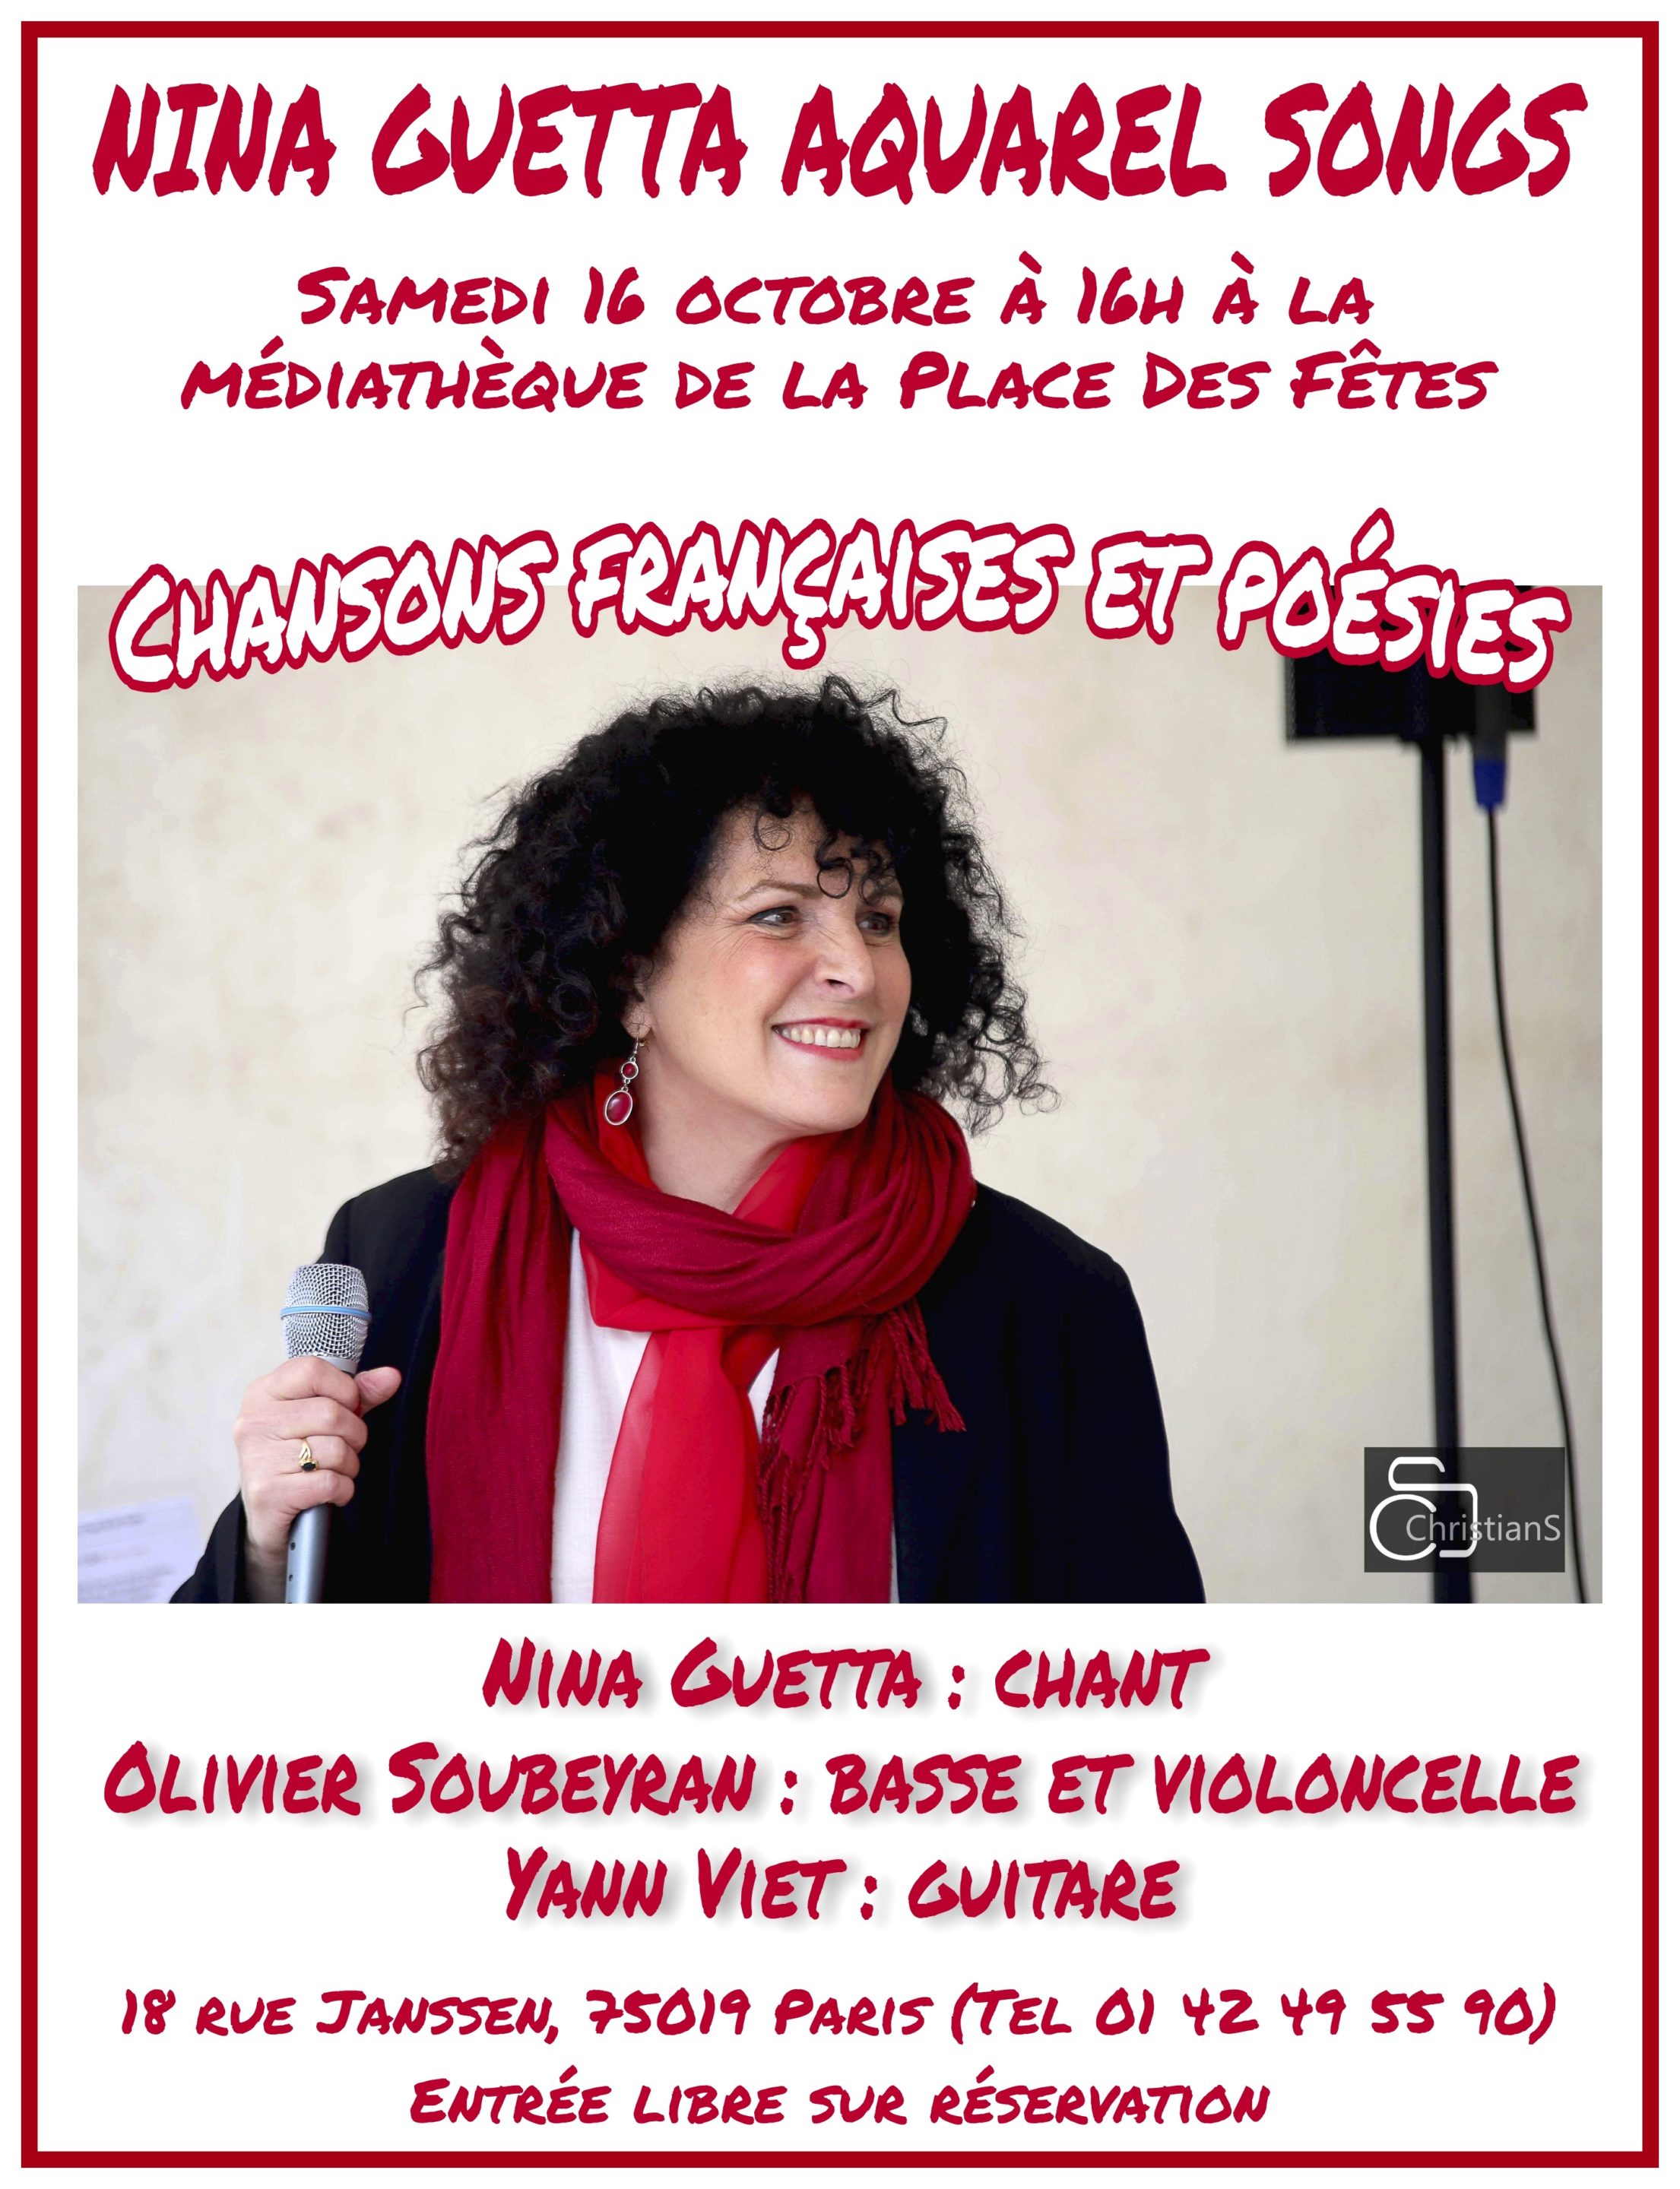 Concert at the Media Library of the “Place des Fêtes” of Paris 19ème, saturday the 16.10.2021 – Chanson Française